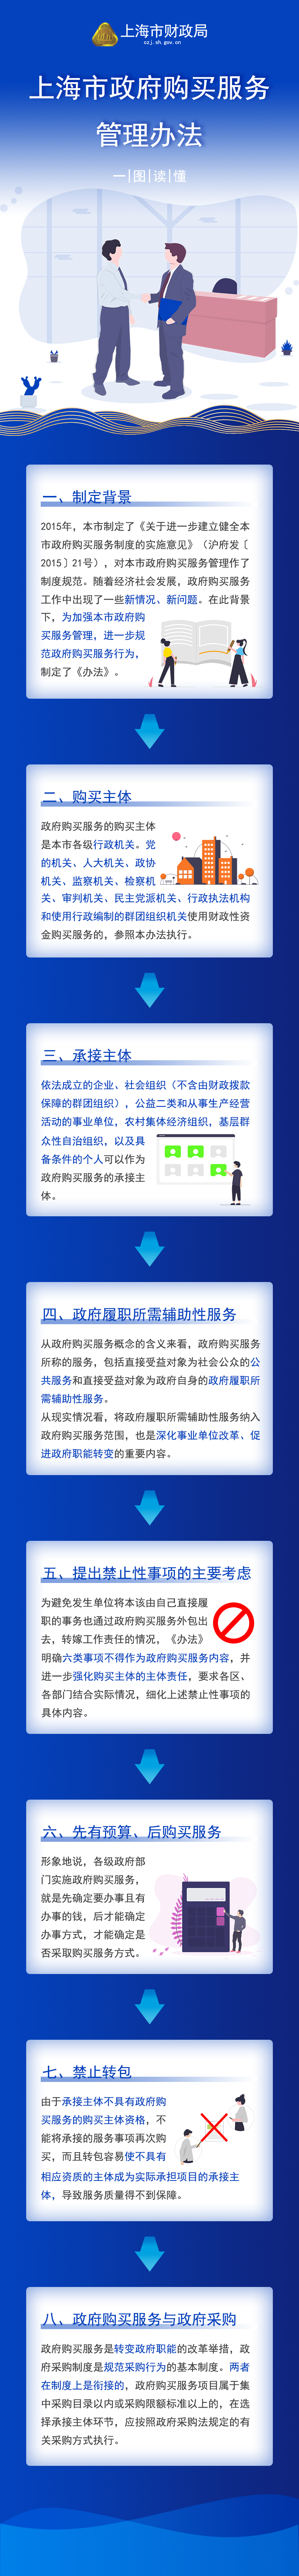 《上海市政府购买服务管理办法》图解.jpg